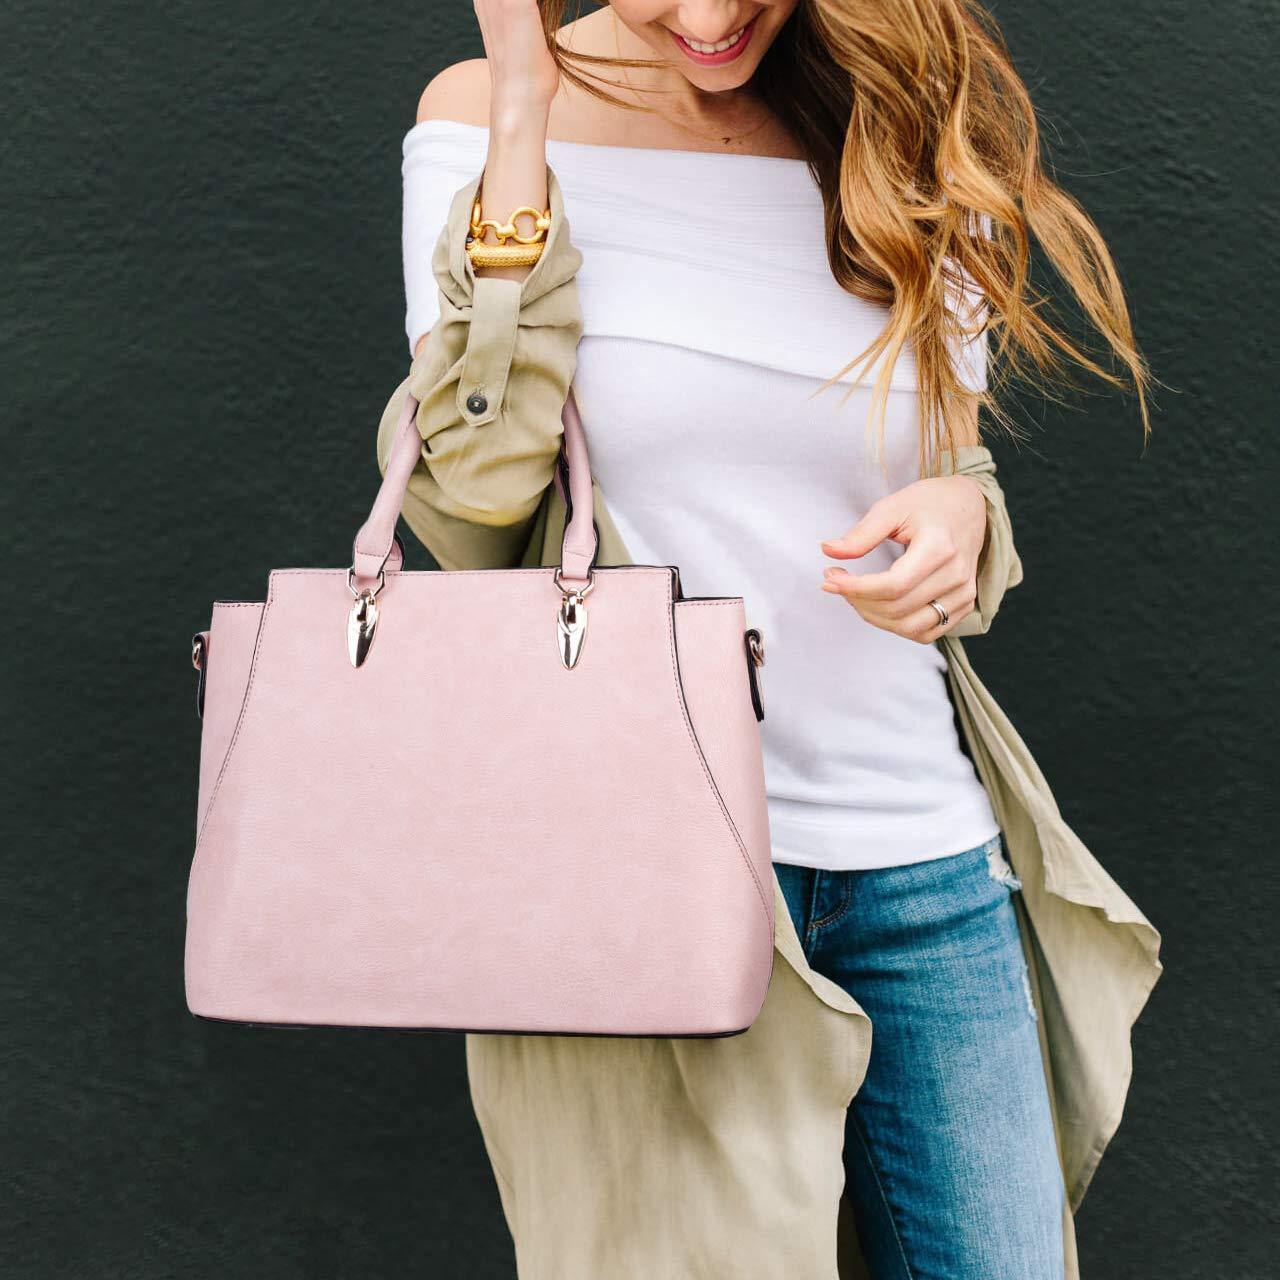 BROMEN Handbags for Women Fashion Tote Bags Shoulder Bag Top Handle Satchel Purse  Set 3pcs